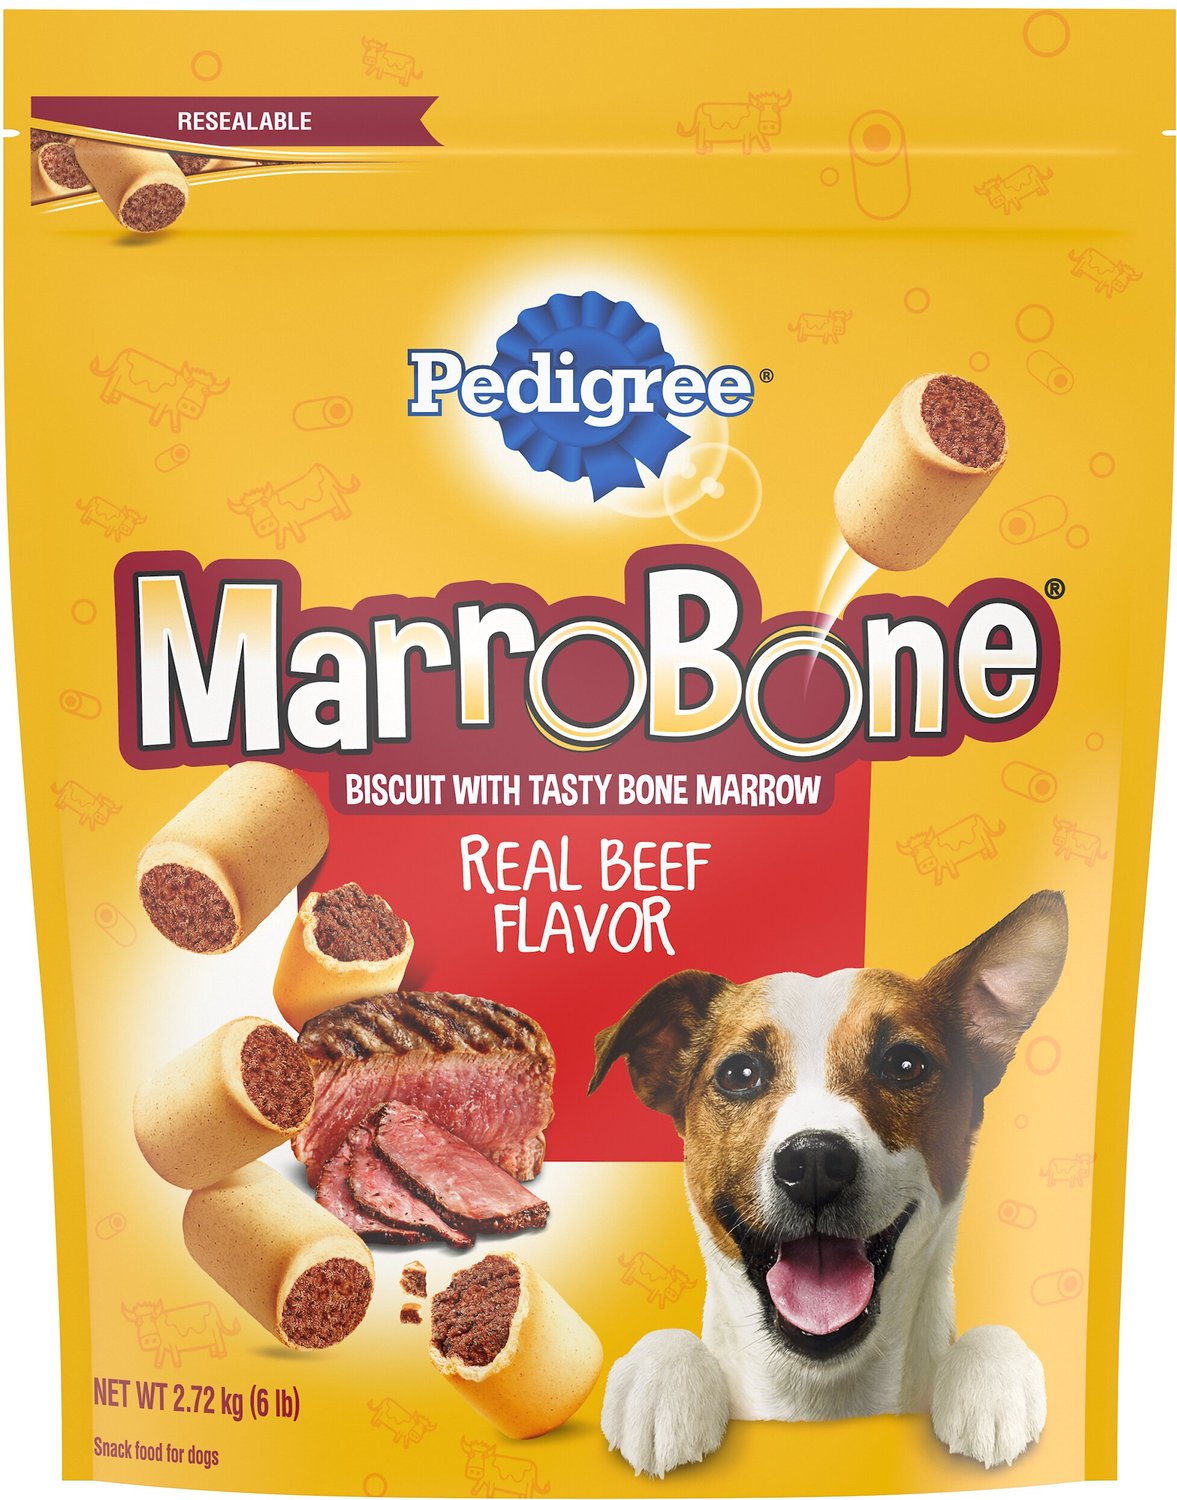 PEDIGREE Marrobone Real Beef Flavor Biscuit Dog Treats, 6lb bag